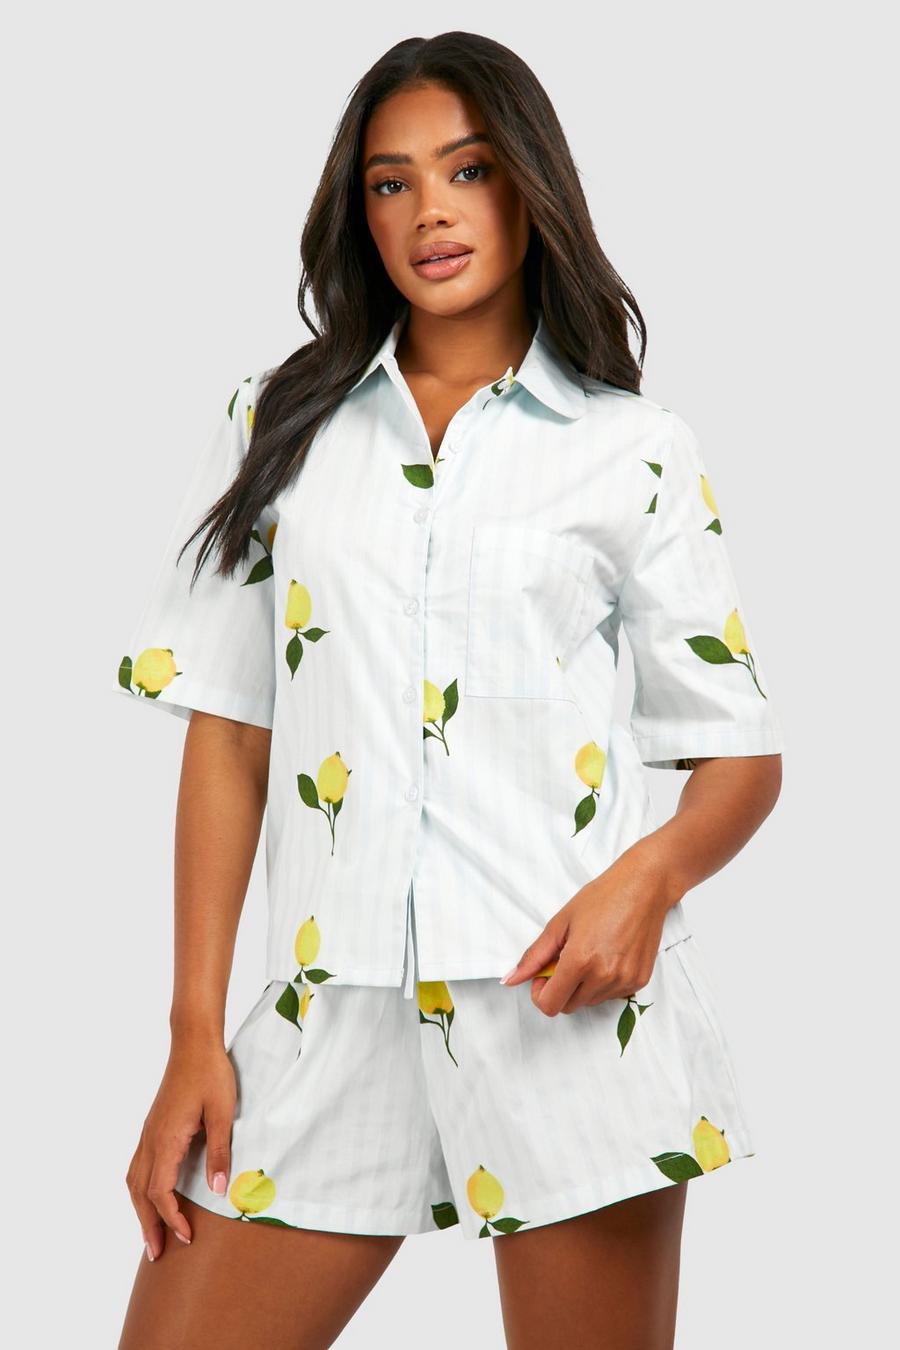 Blue Lemon Stripe Short Sleeve Pajama Shirt